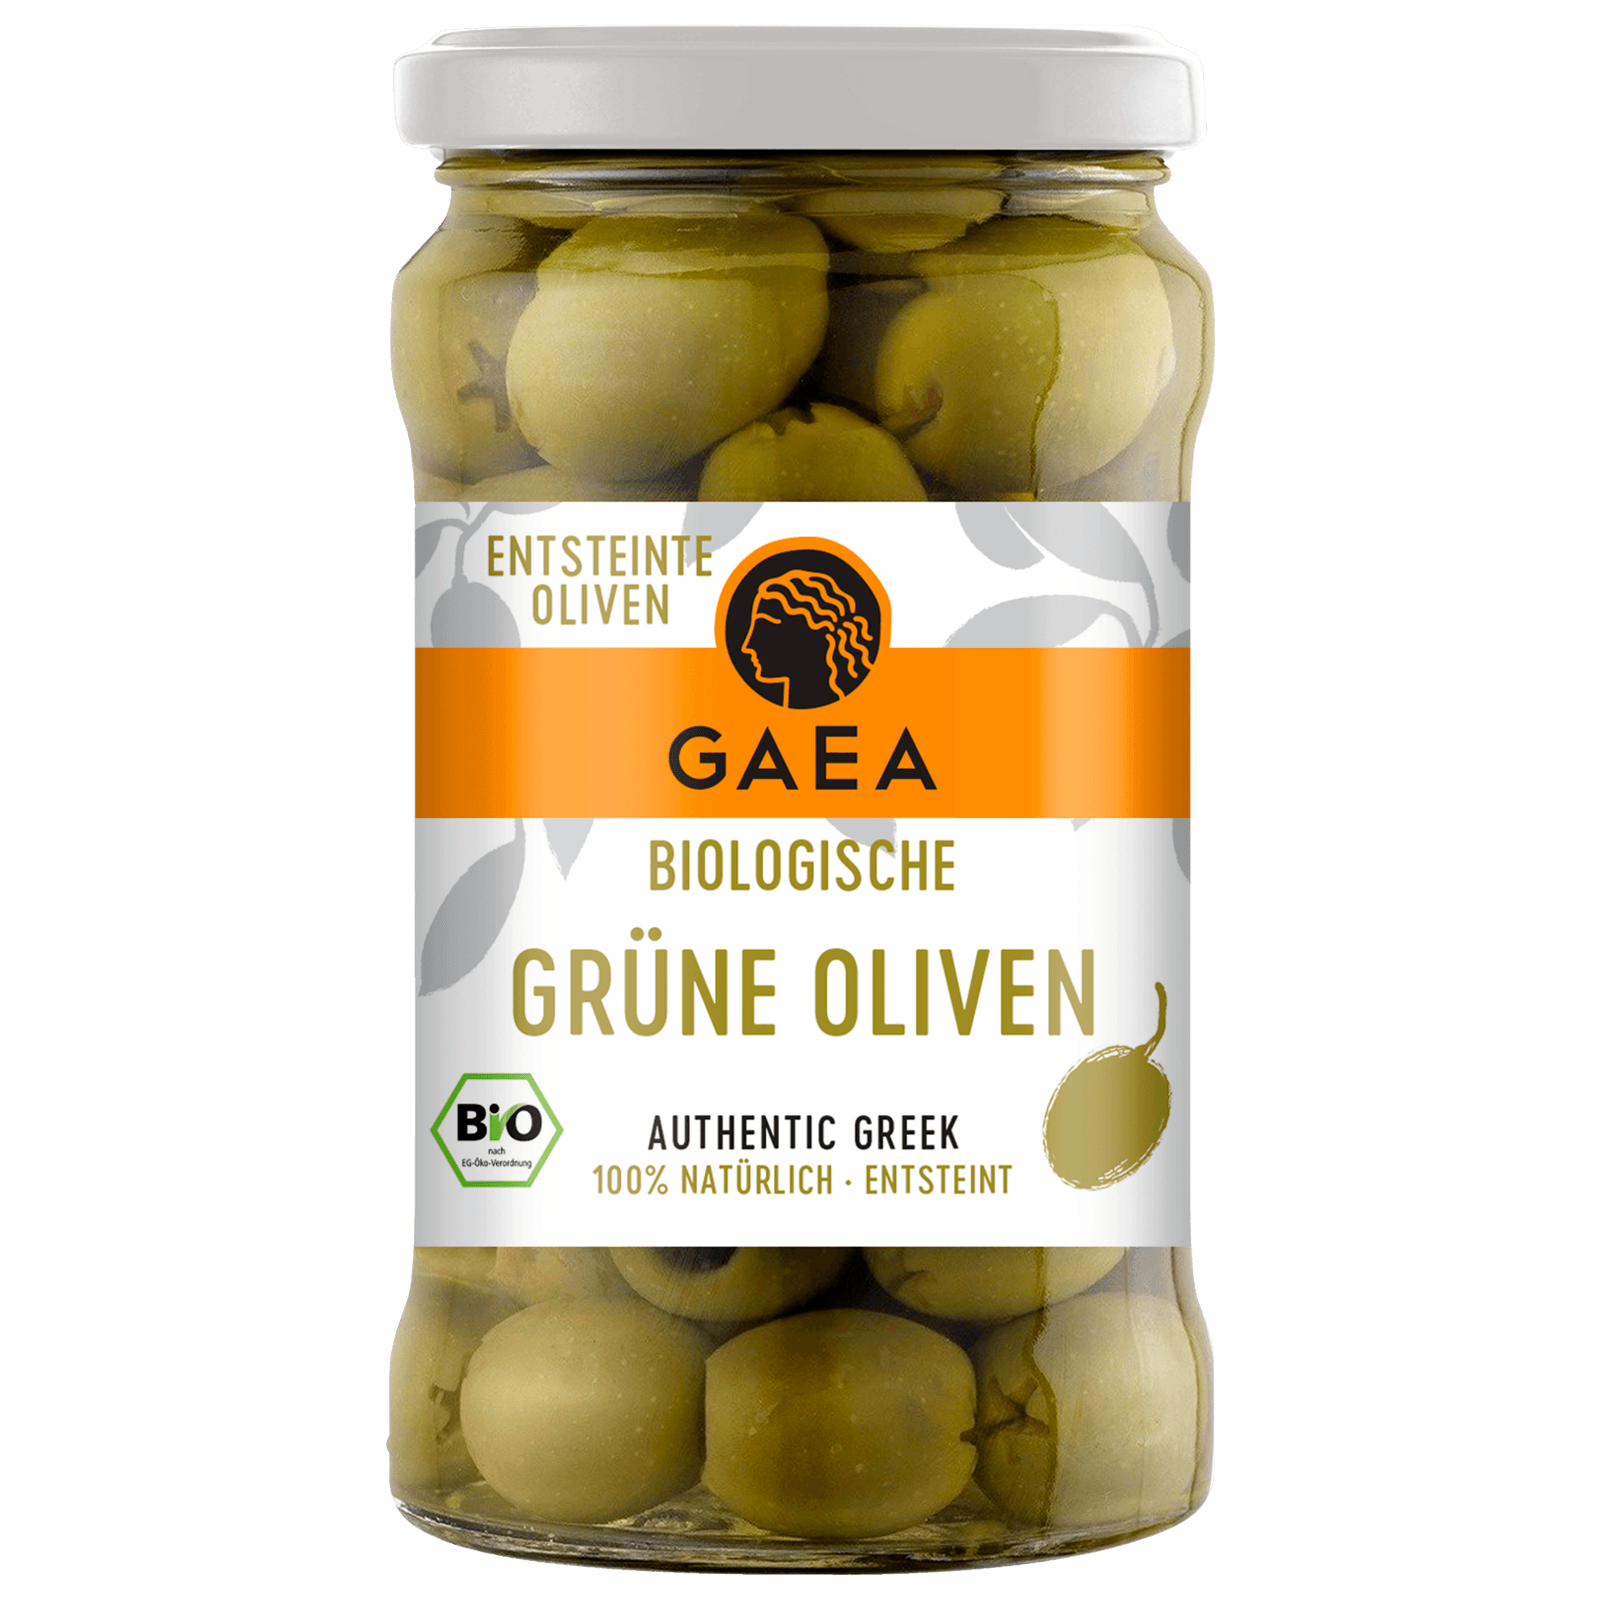 Gaea Bio Biologische entsteinte grüne Oliven 290g